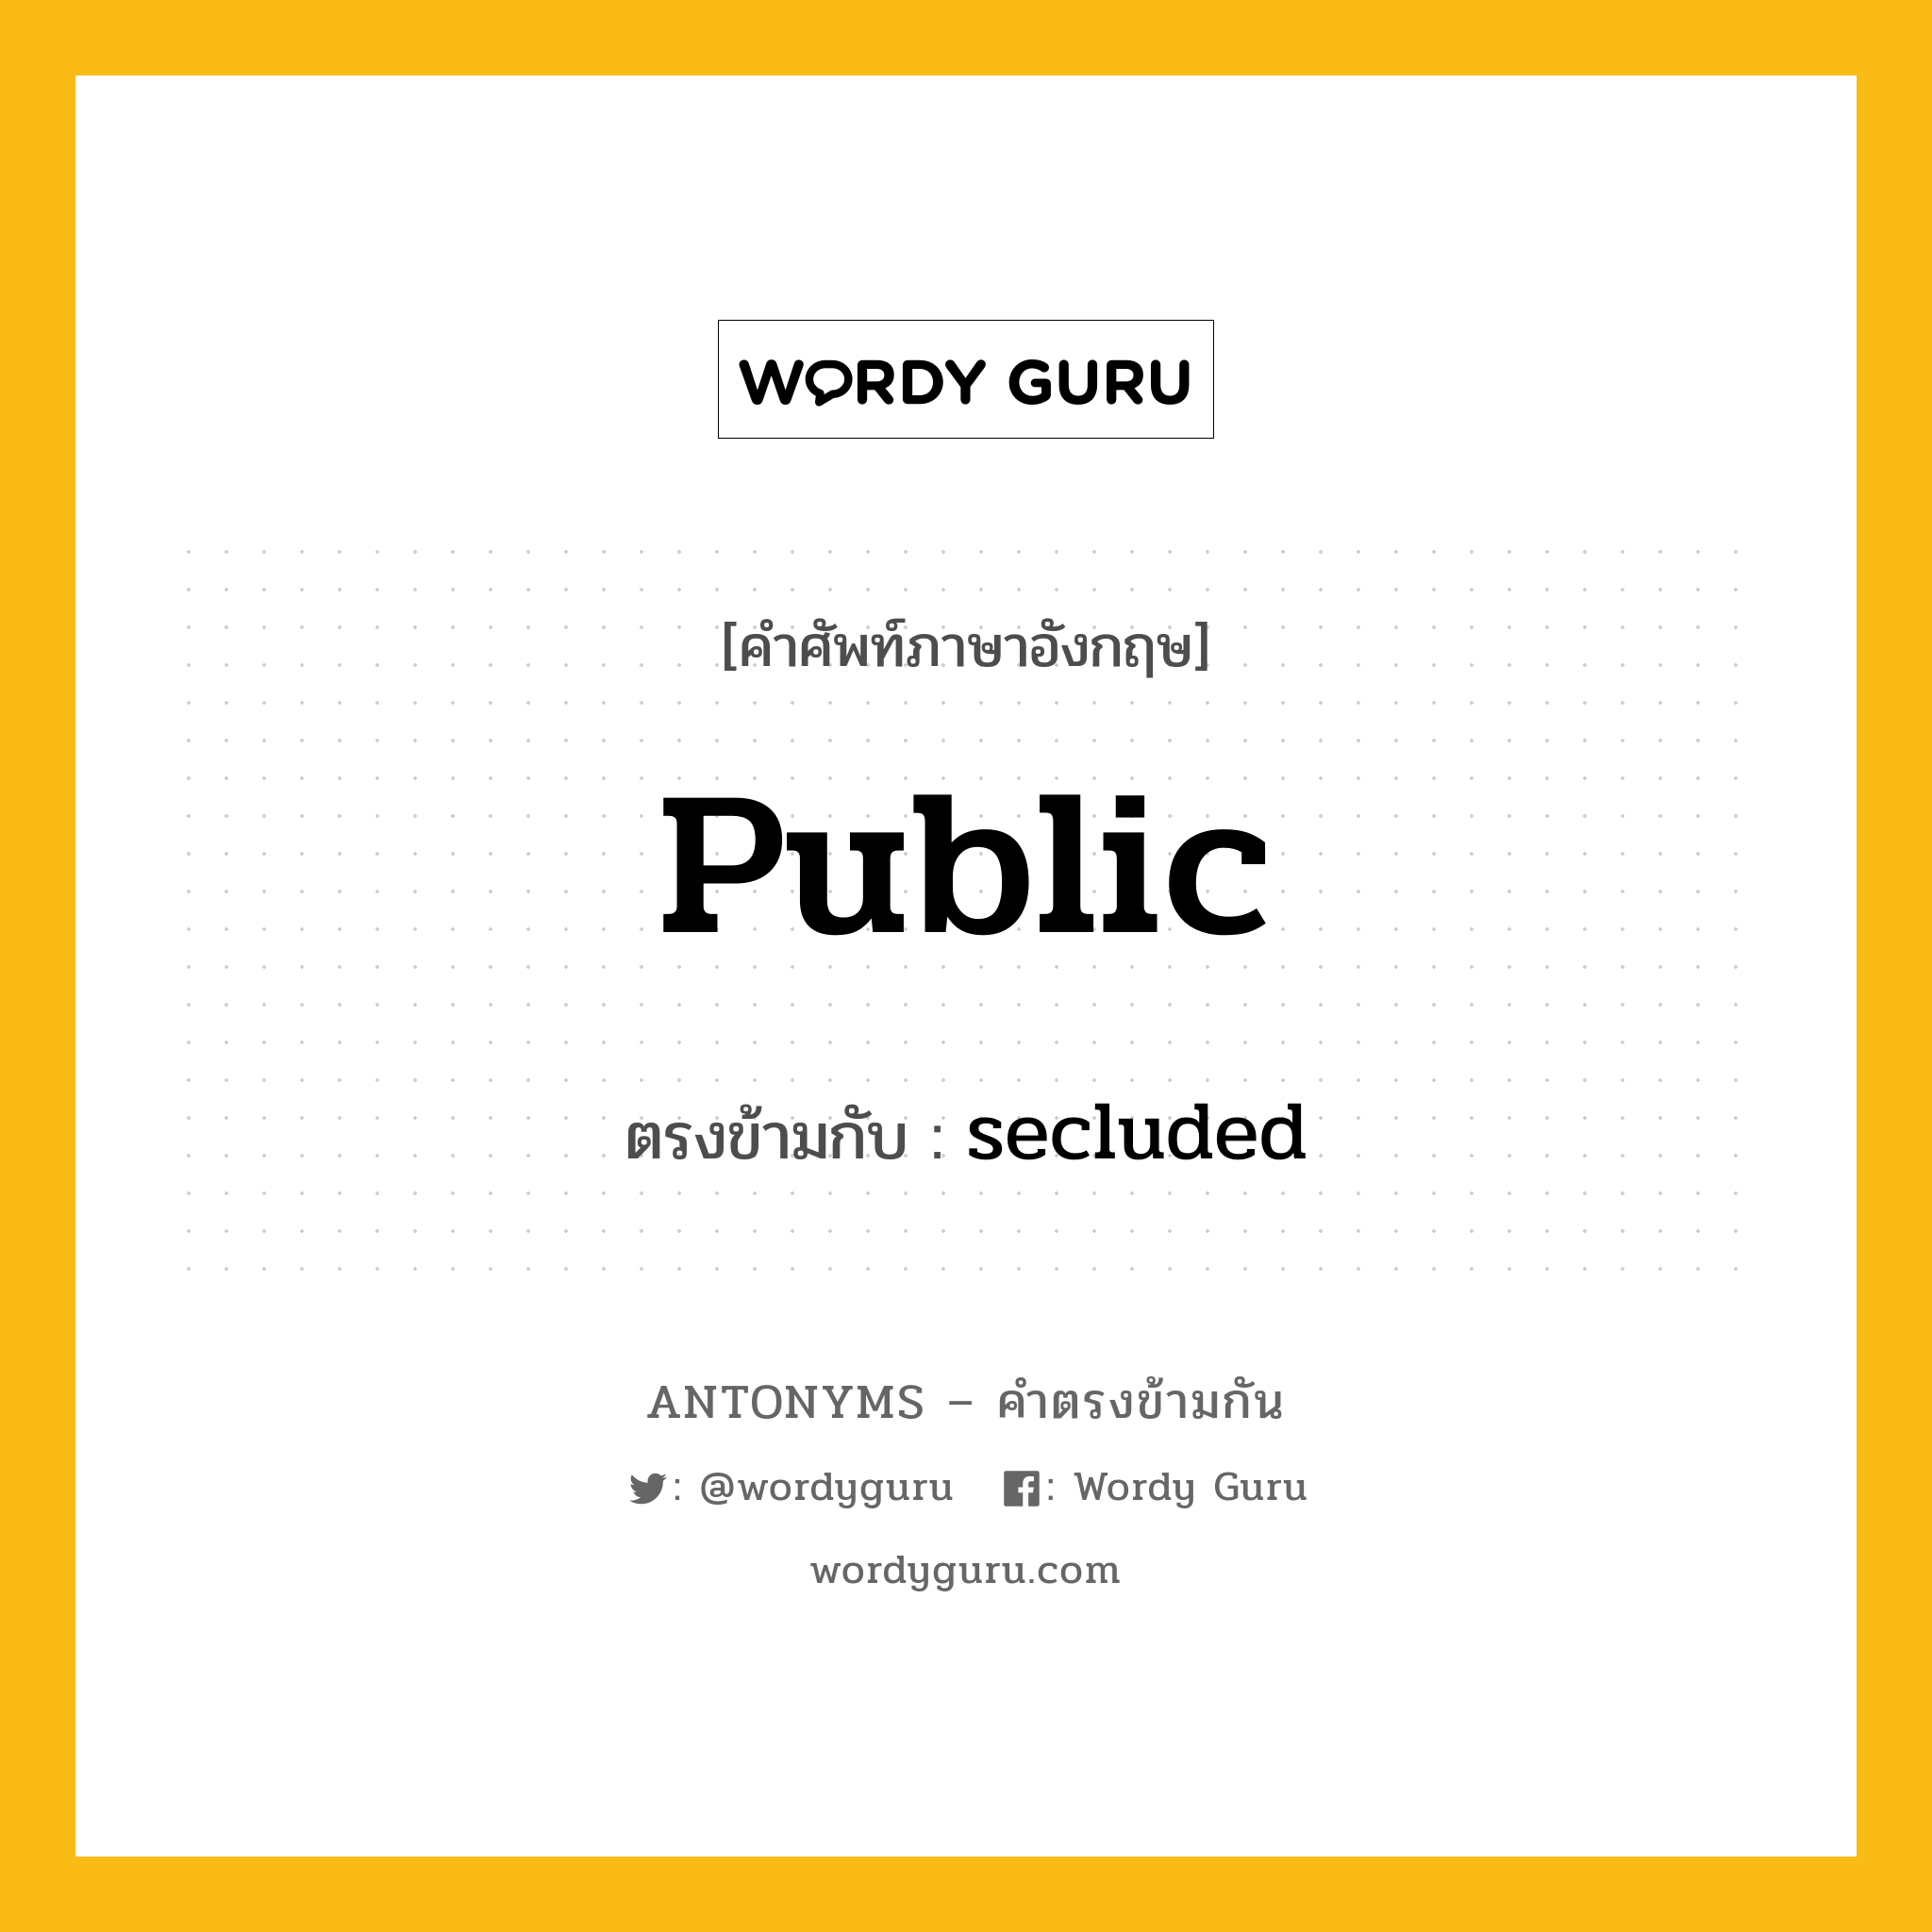 public เป็นคำตรงข้ามกับคำไหนบ้าง?, คำศัพท์ภาษาอังกฤษที่มีความหมายตรงข้ามกัน public ตรงข้ามกับ secluded หมวด secluded